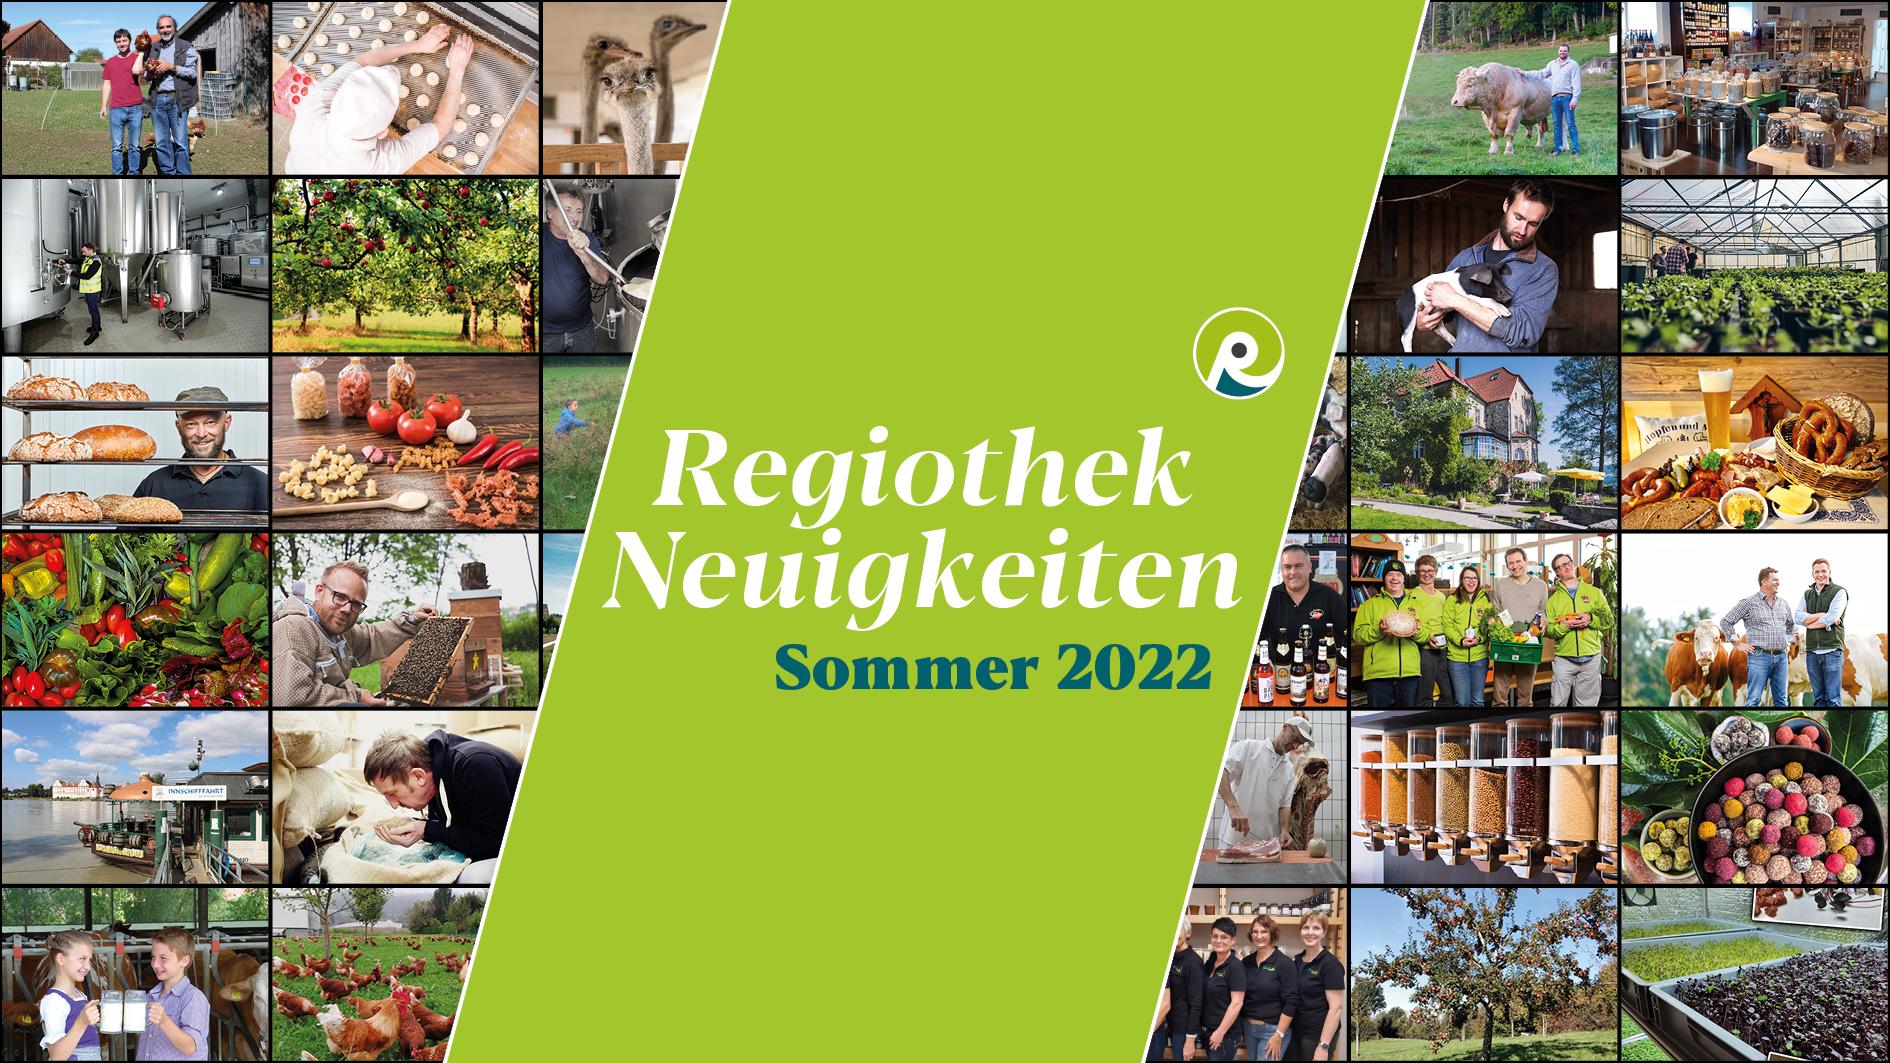 Text "Regiothek Neuigkeiten Sommer 2022" auf stilisiertem Hintergrund